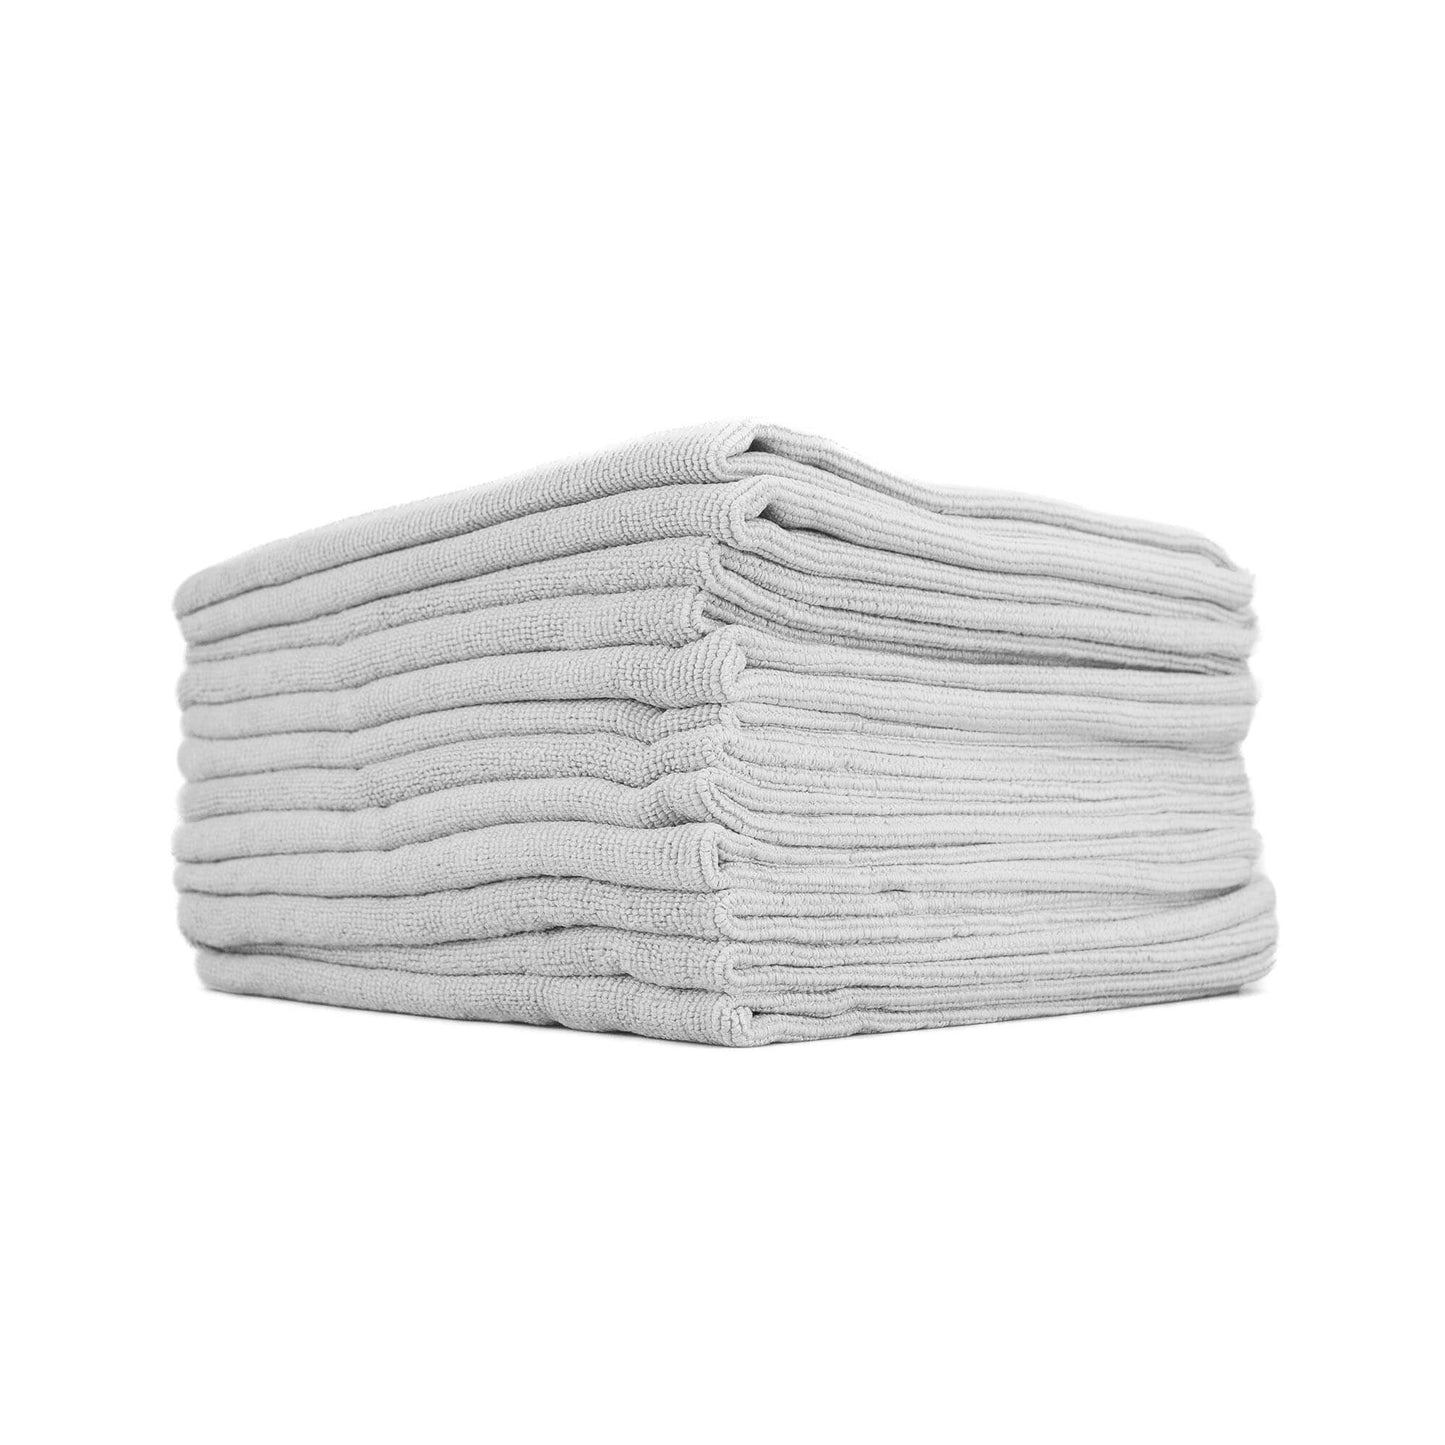 THE Edgeless PEARL Microfiber Ceramic Coating Towel - 12 Pack